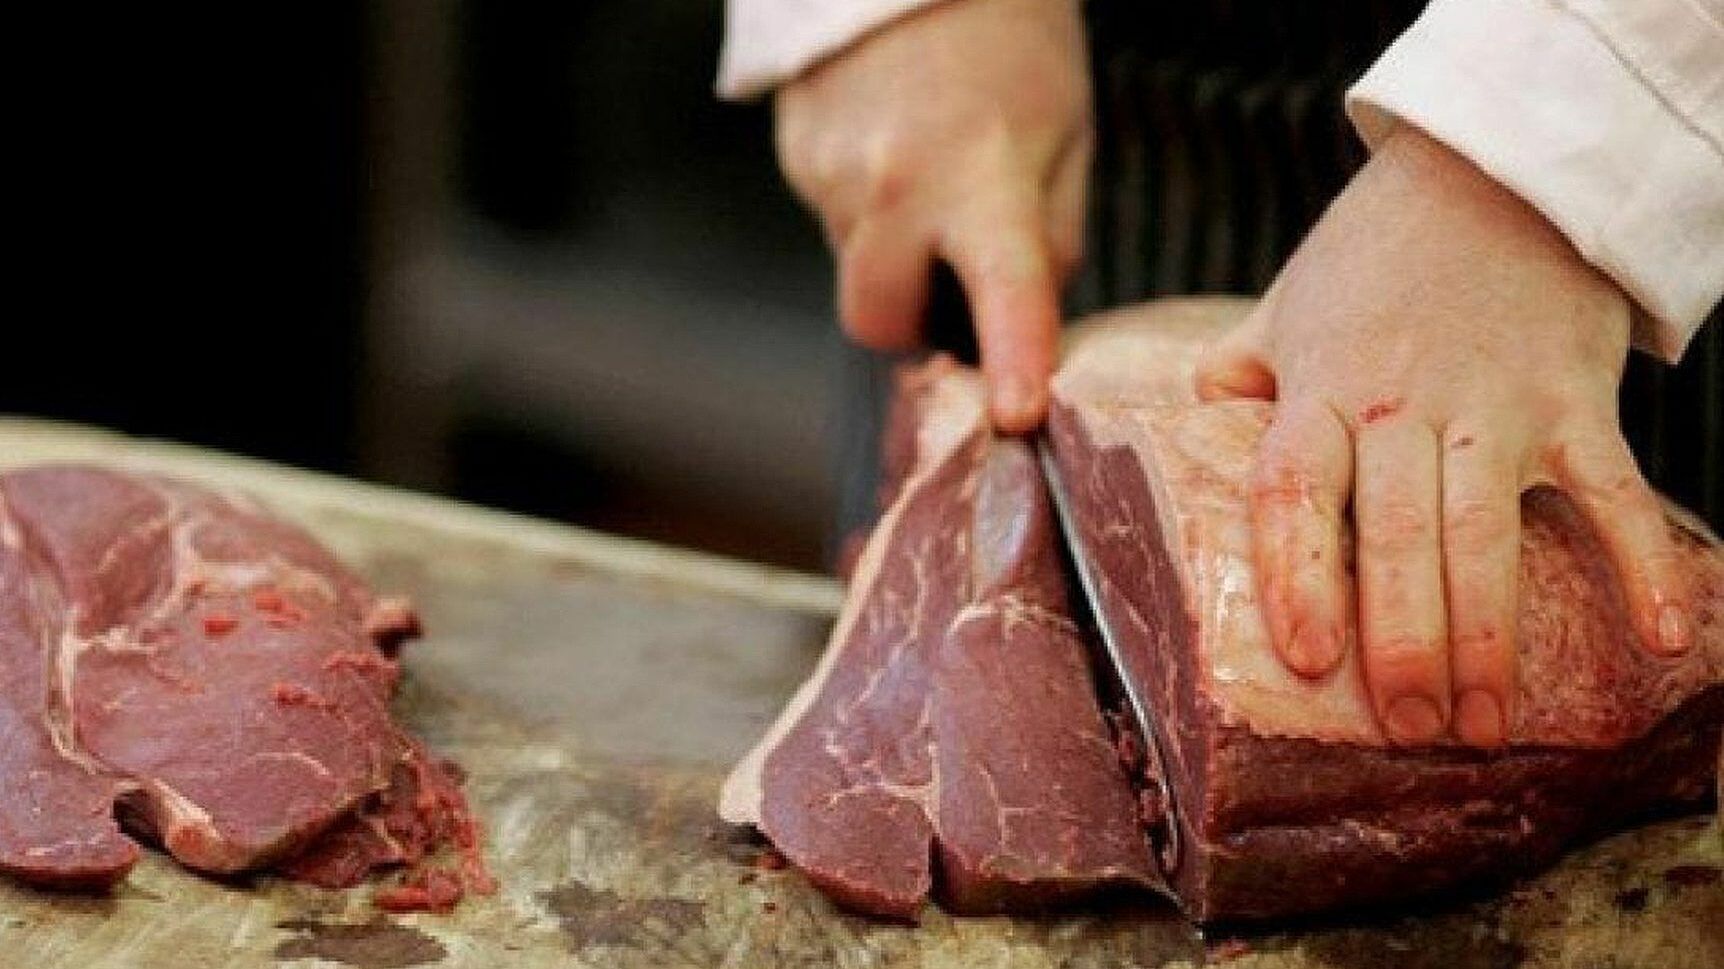 Италия запретит производство и продажу «синтетического мяса», сообщает Bloomberg